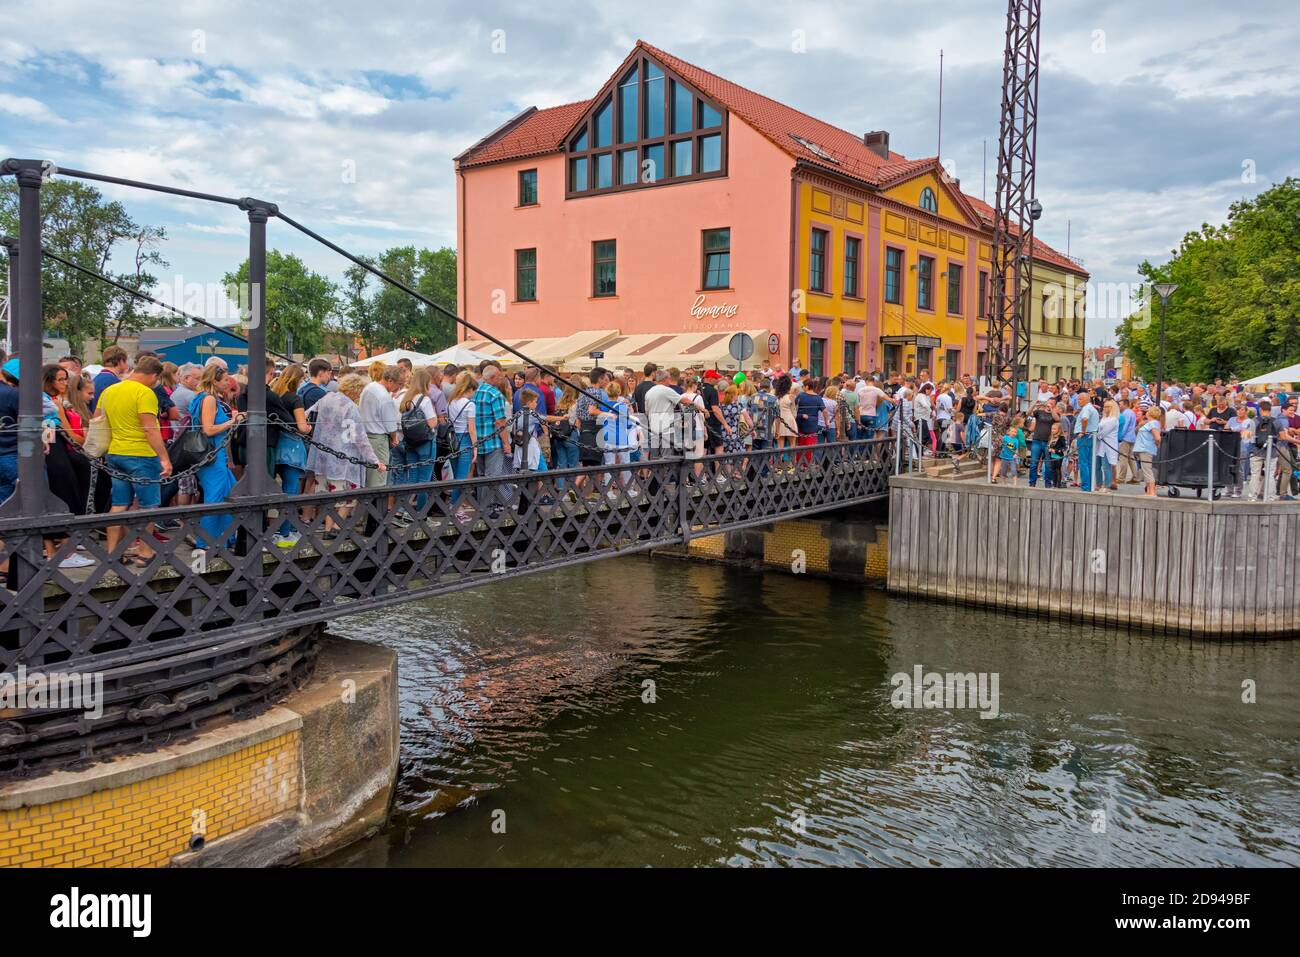 Personnes traversant le pont de la chaîne (le seul pont tournant de Lituanie tourné par deux personnes) pendant le Festival de la mer de Klaipeda, Klaipeda, Lituanie Banque D'Images